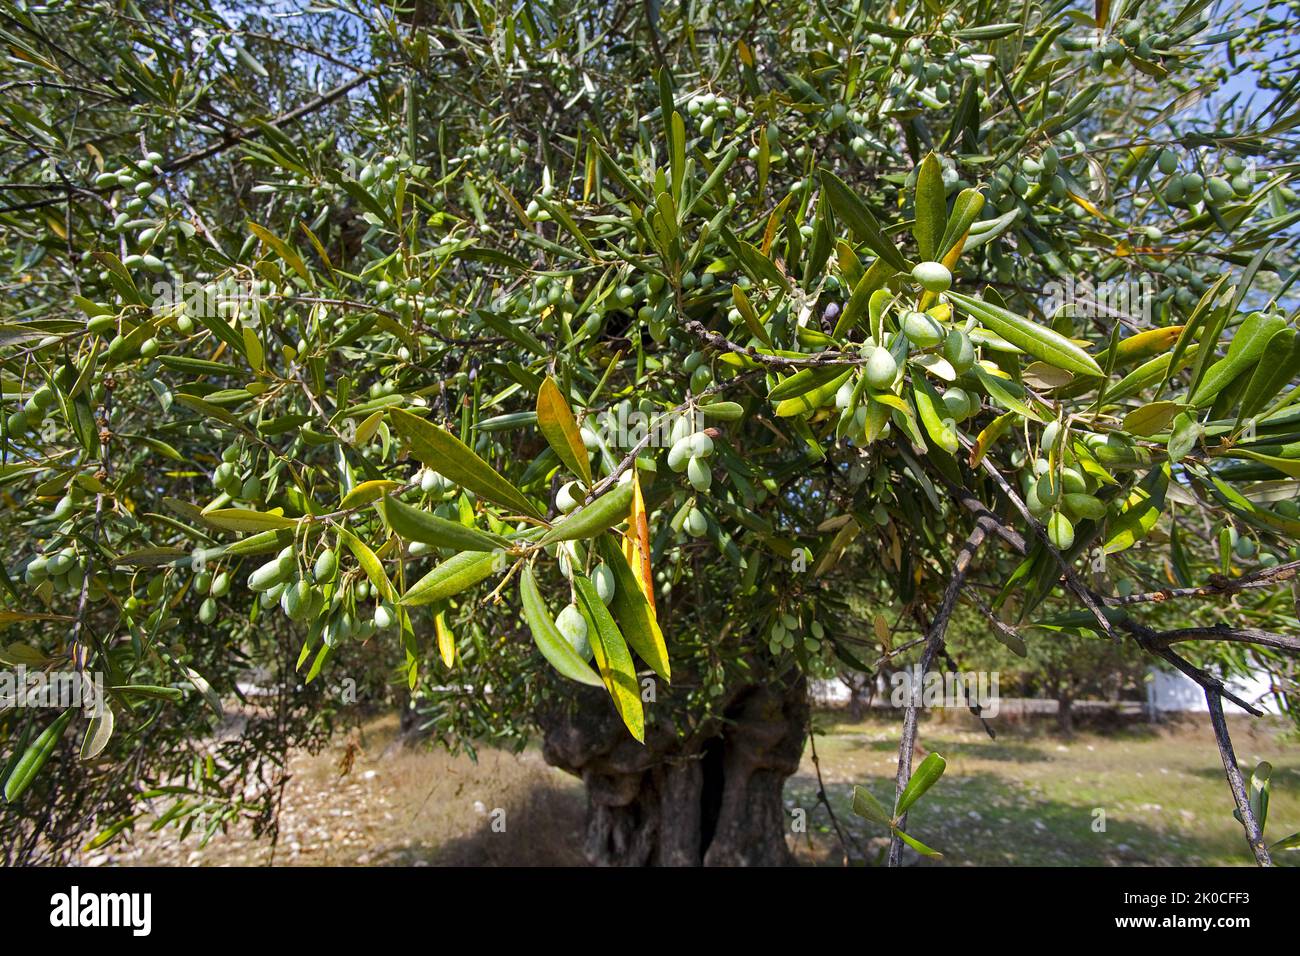 Vieil olivier (Olea europaea) aux olives mûres à Limni Keriou, île de Zakynthos, Grèce, Europe Banque D'Images